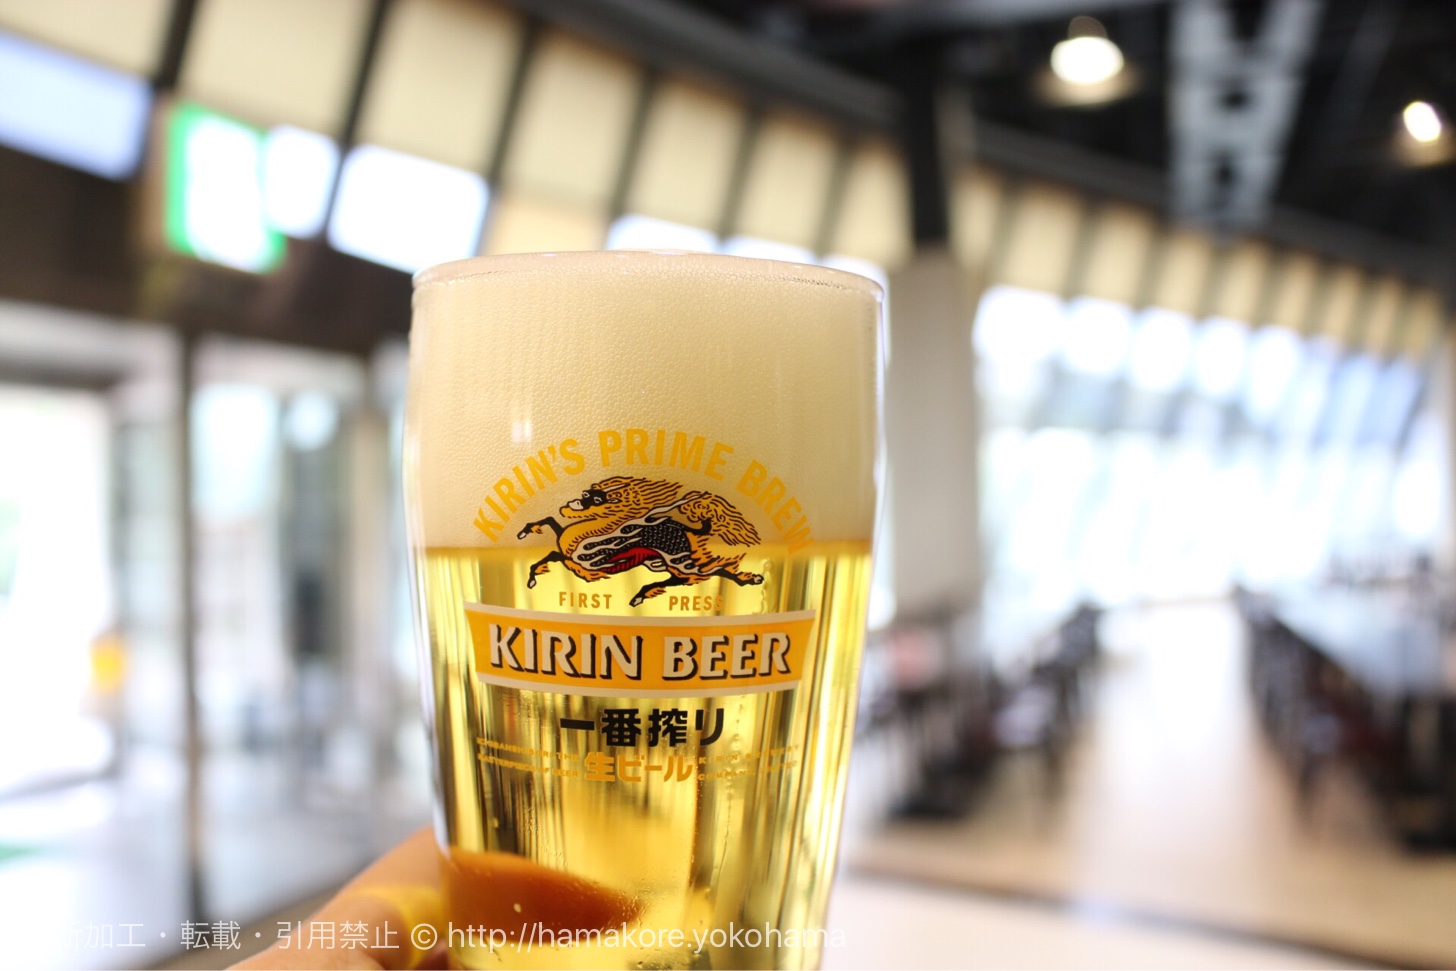 キリンビール横浜工場 リニューアル後に初訪問！予約がおすすめ！試飲3杯も